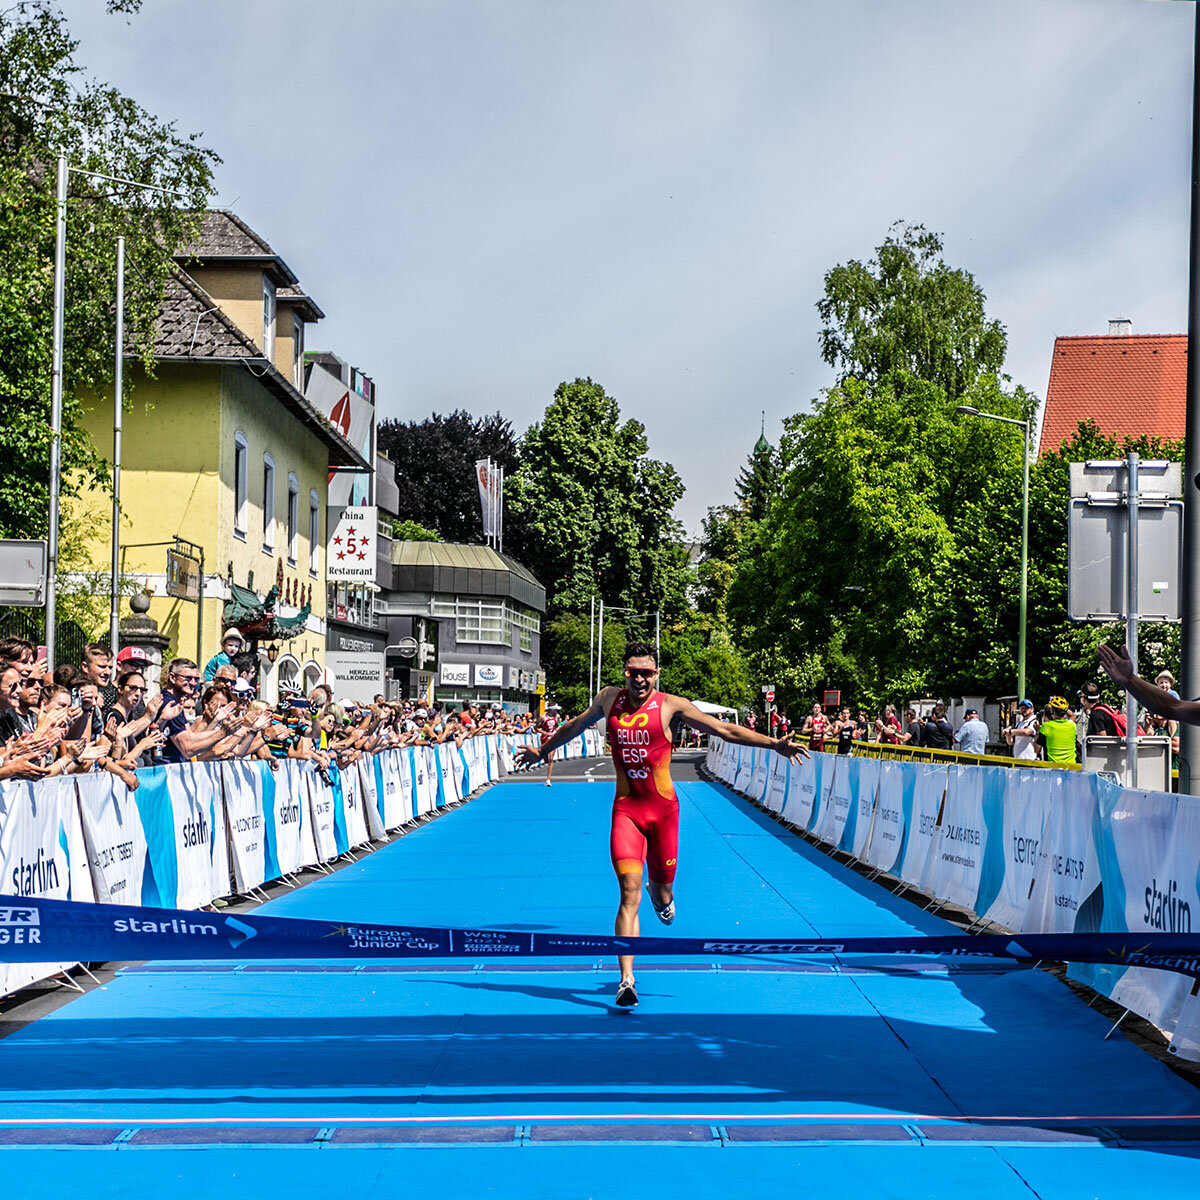 Zieleinlauf beim Triathlon Austria Wels